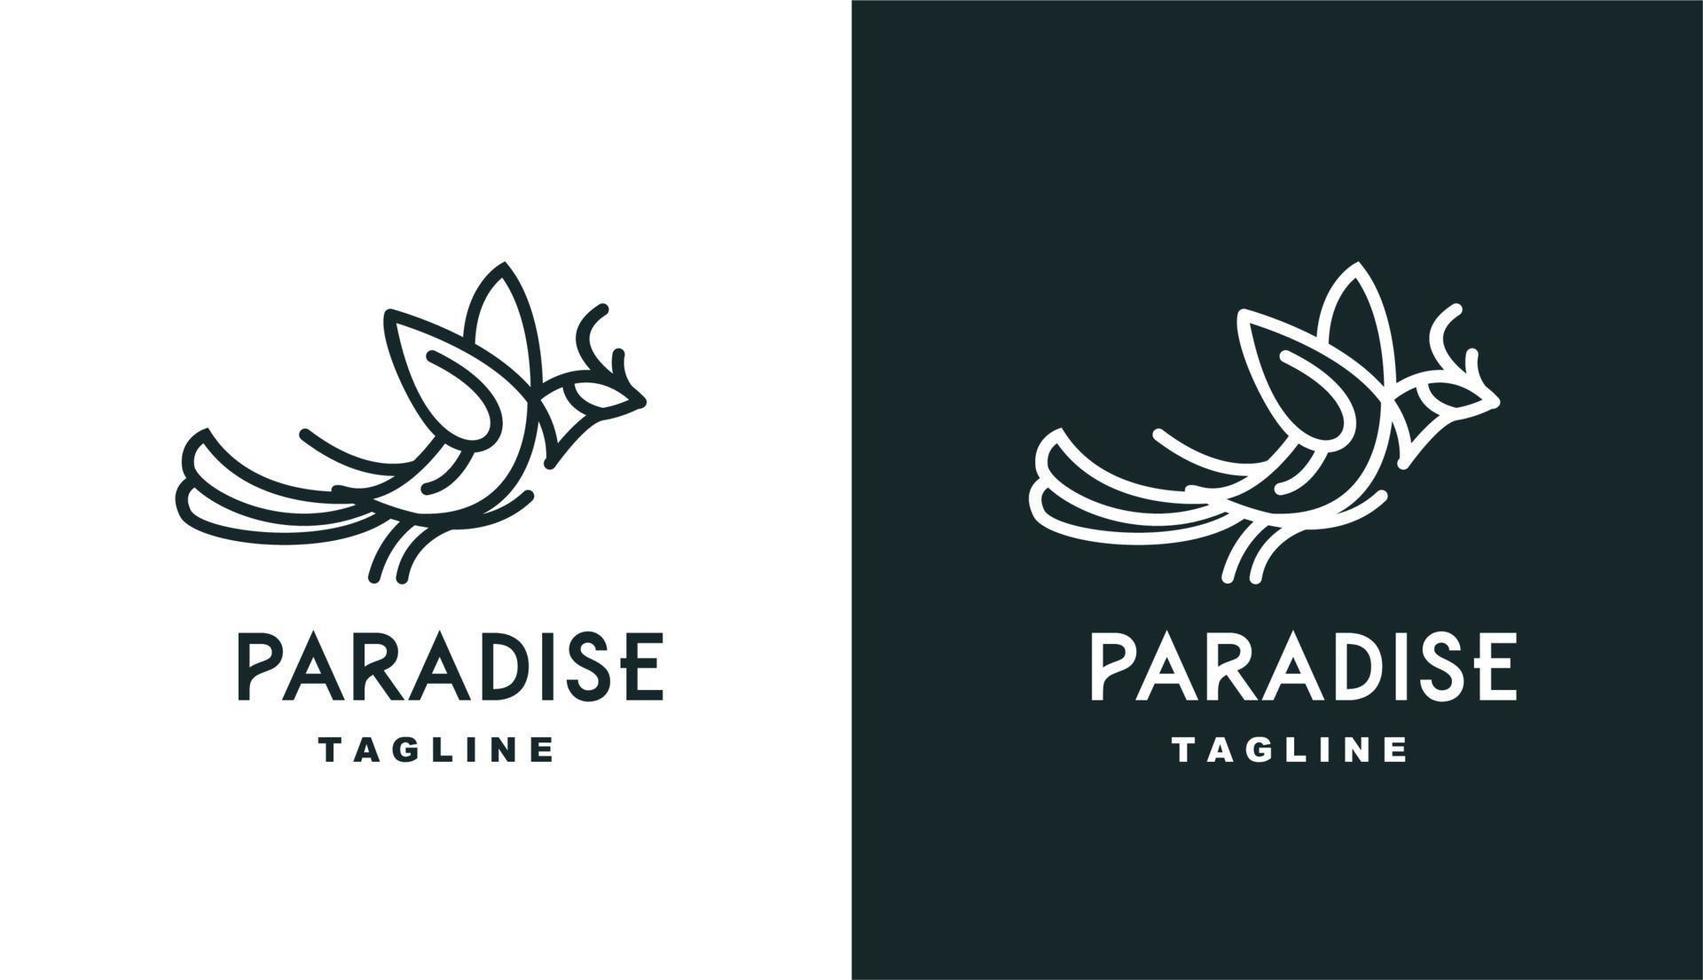 vektor fågelparadis monoline enkel logotyp perfekt för alla märken och företag